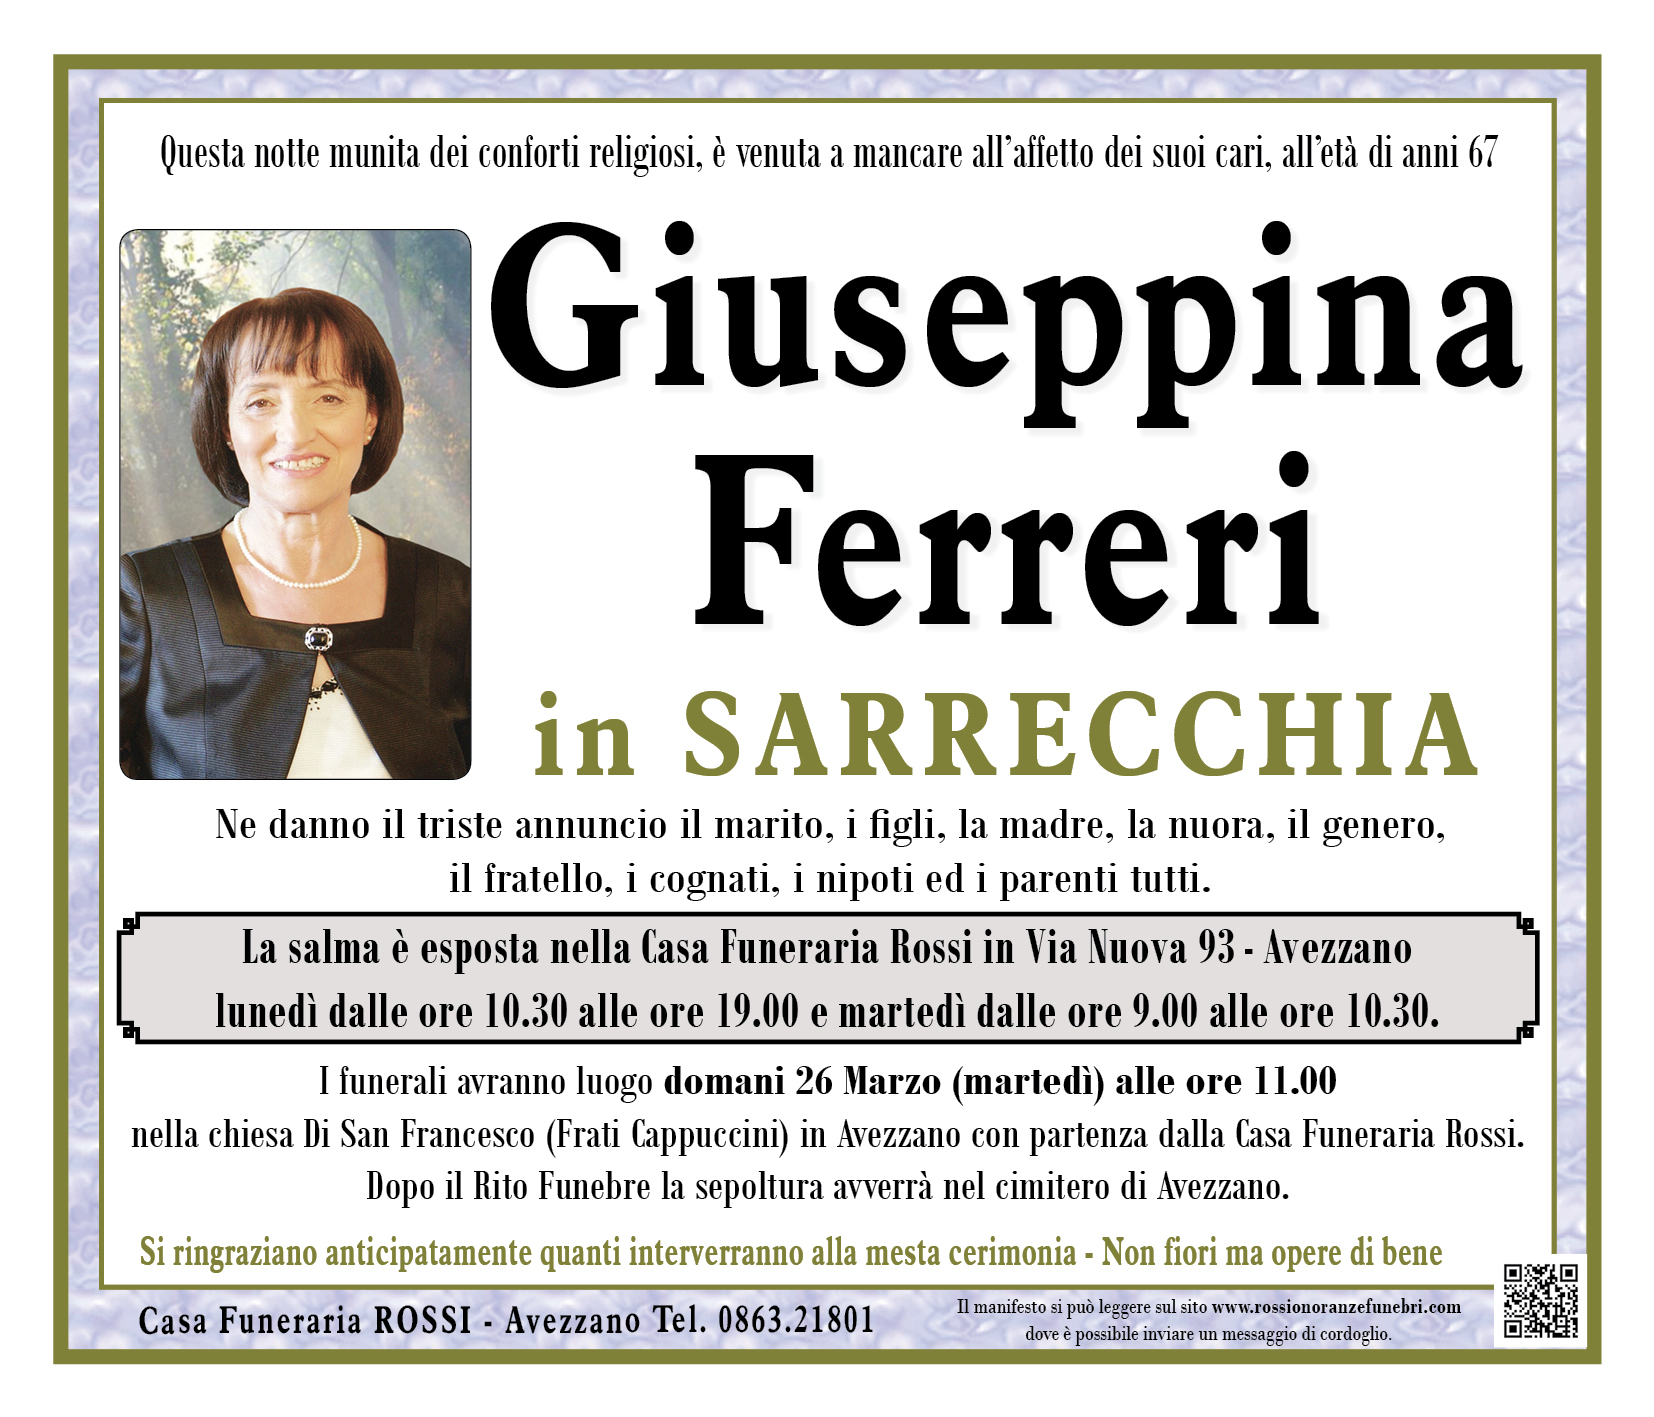 Giuseppina Ferreri